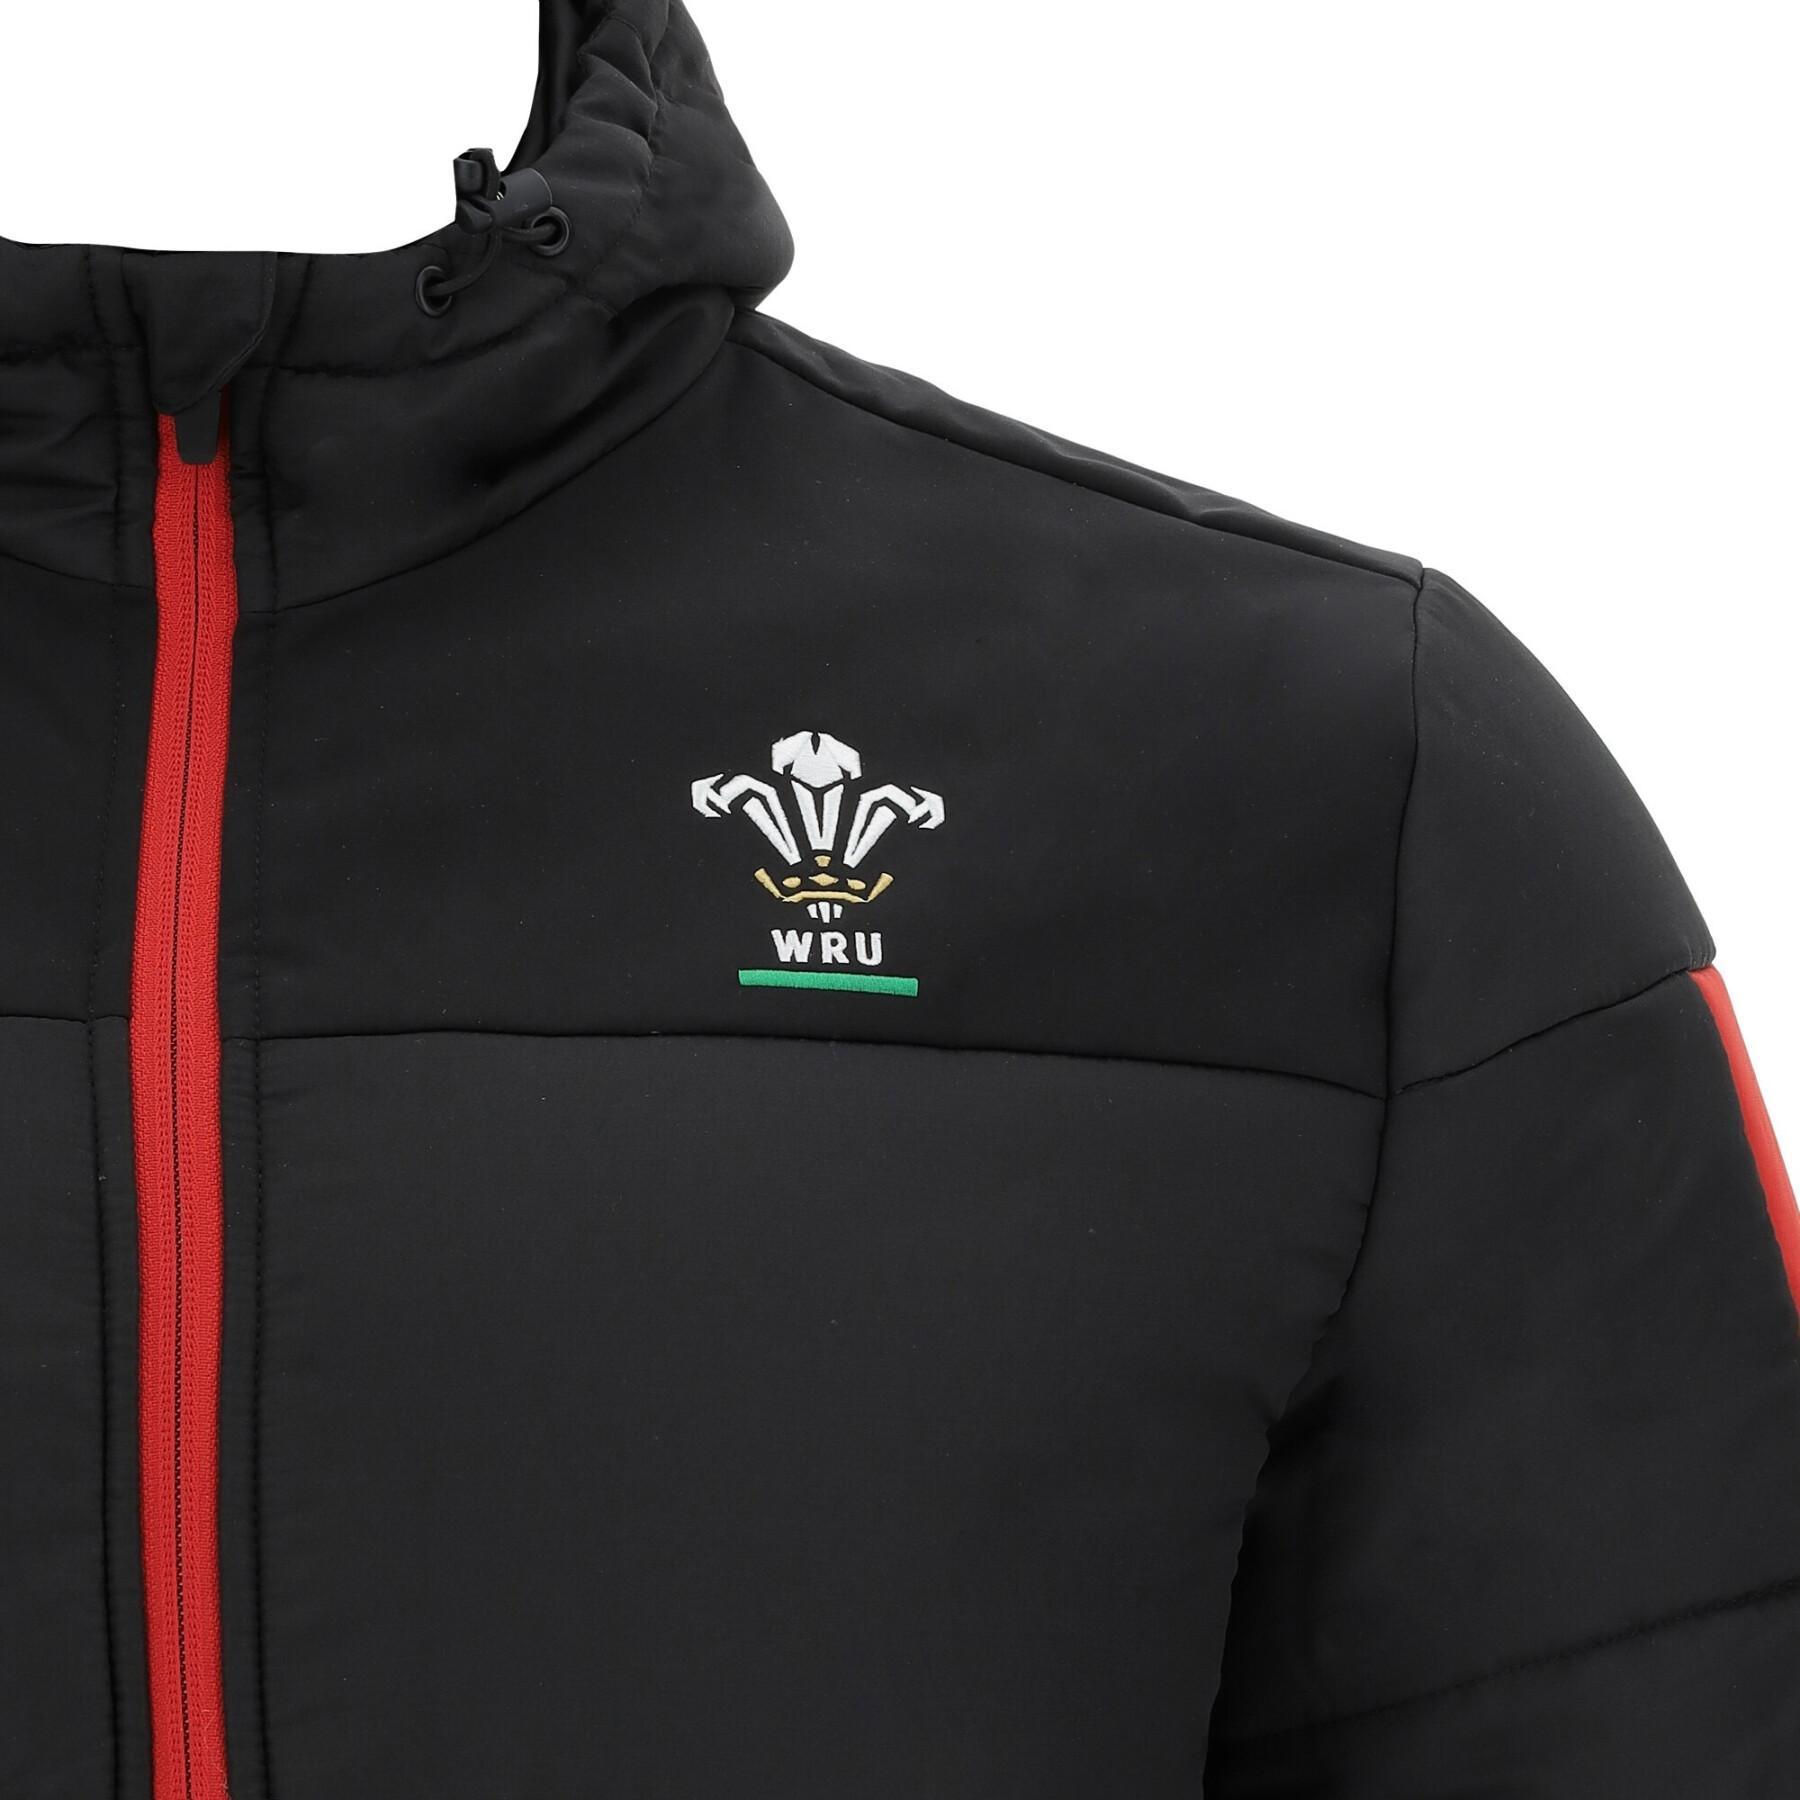 Veste voyage Pays de Galles rugby 2020/21